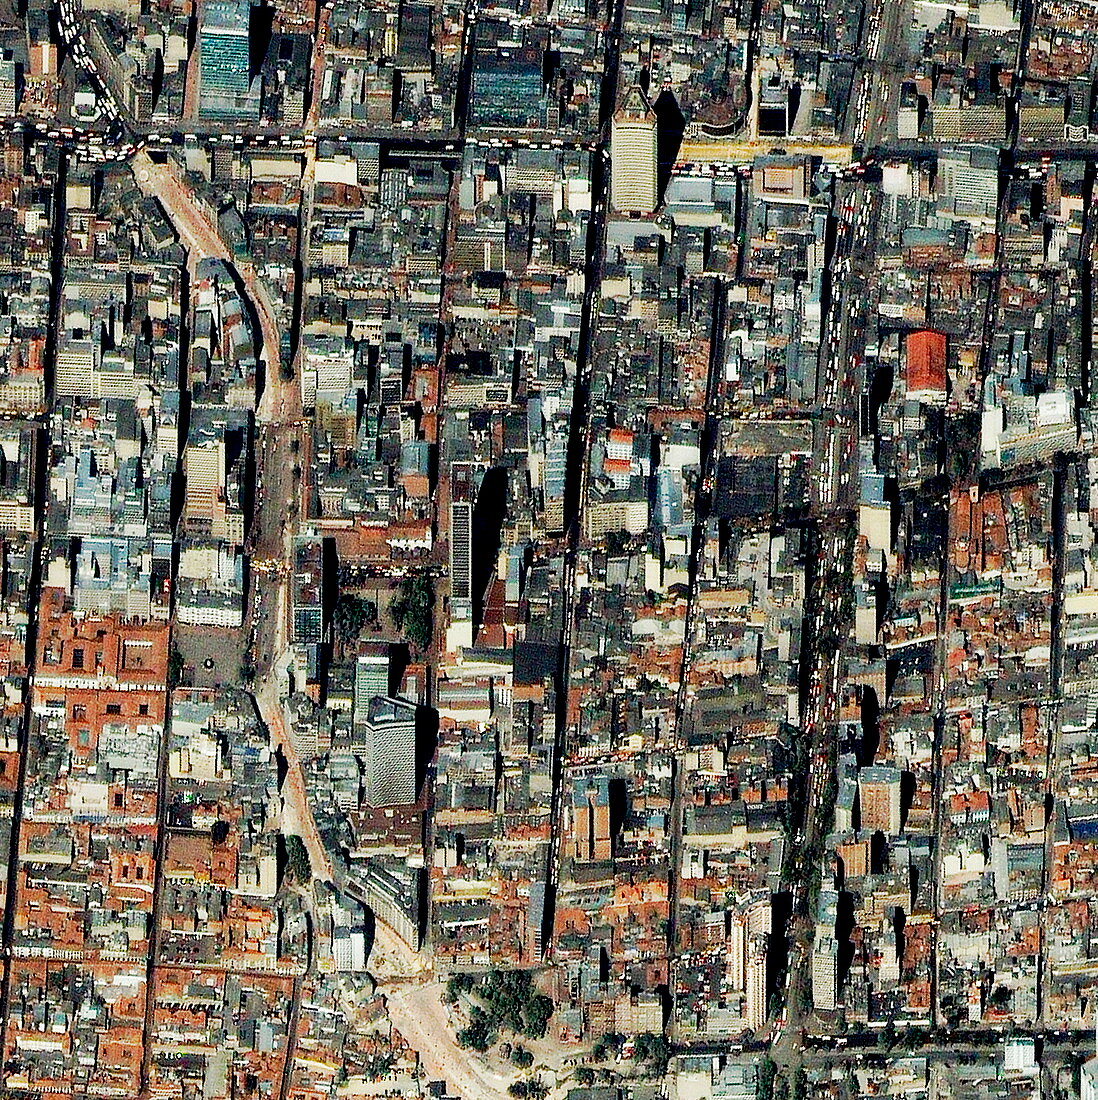 Bogota,Colombia